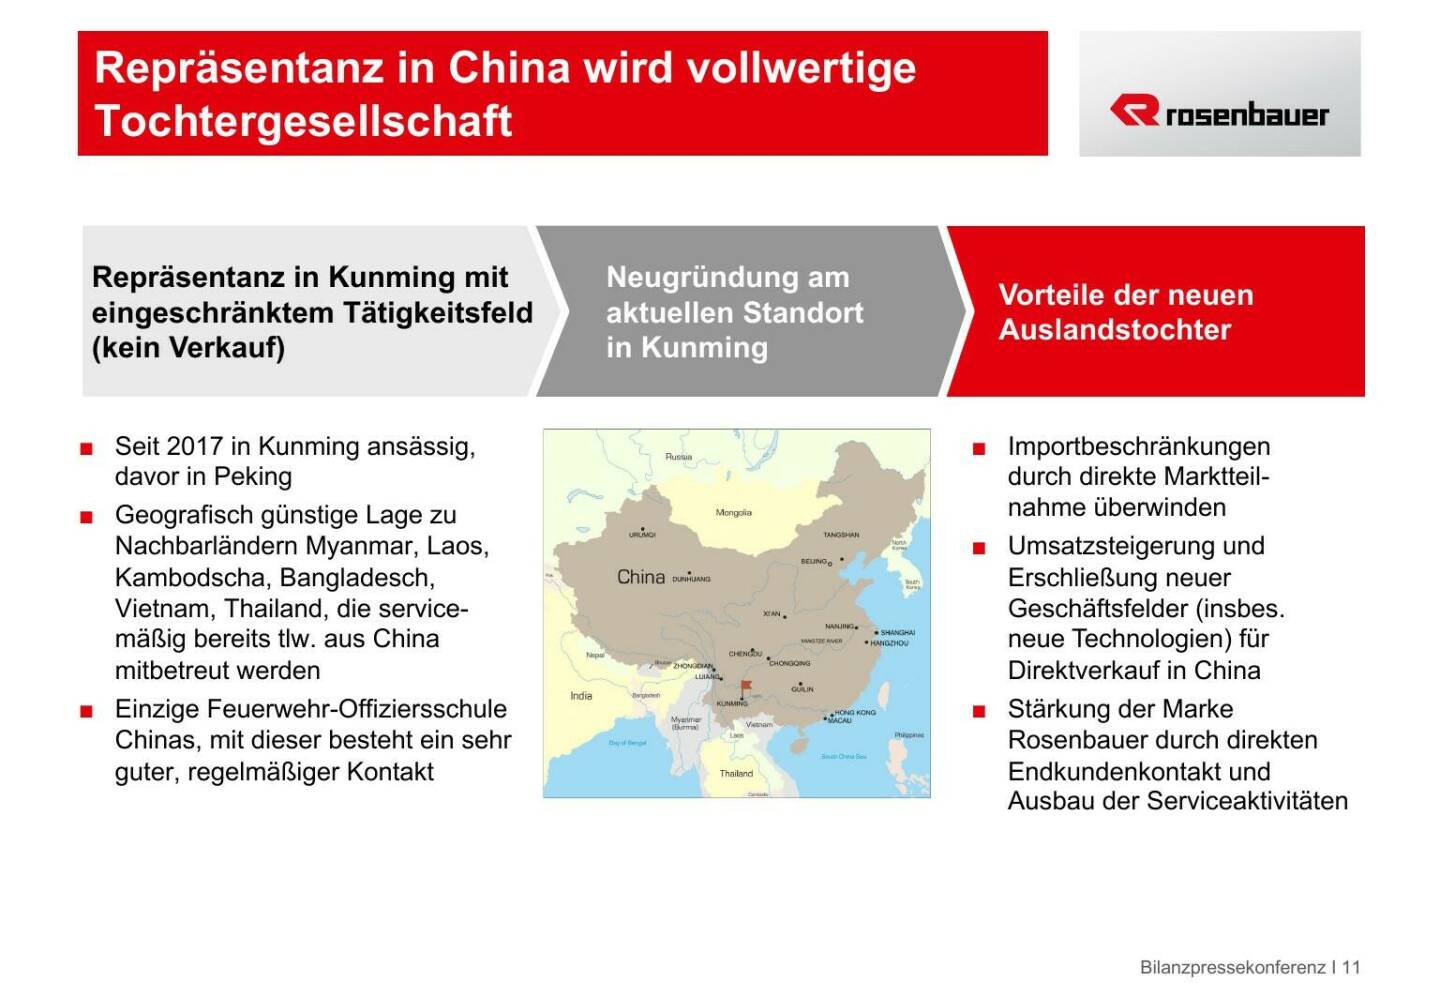 Rosenbauer - Repräsentanz in China wird vollwertige Tochtergesellschaft